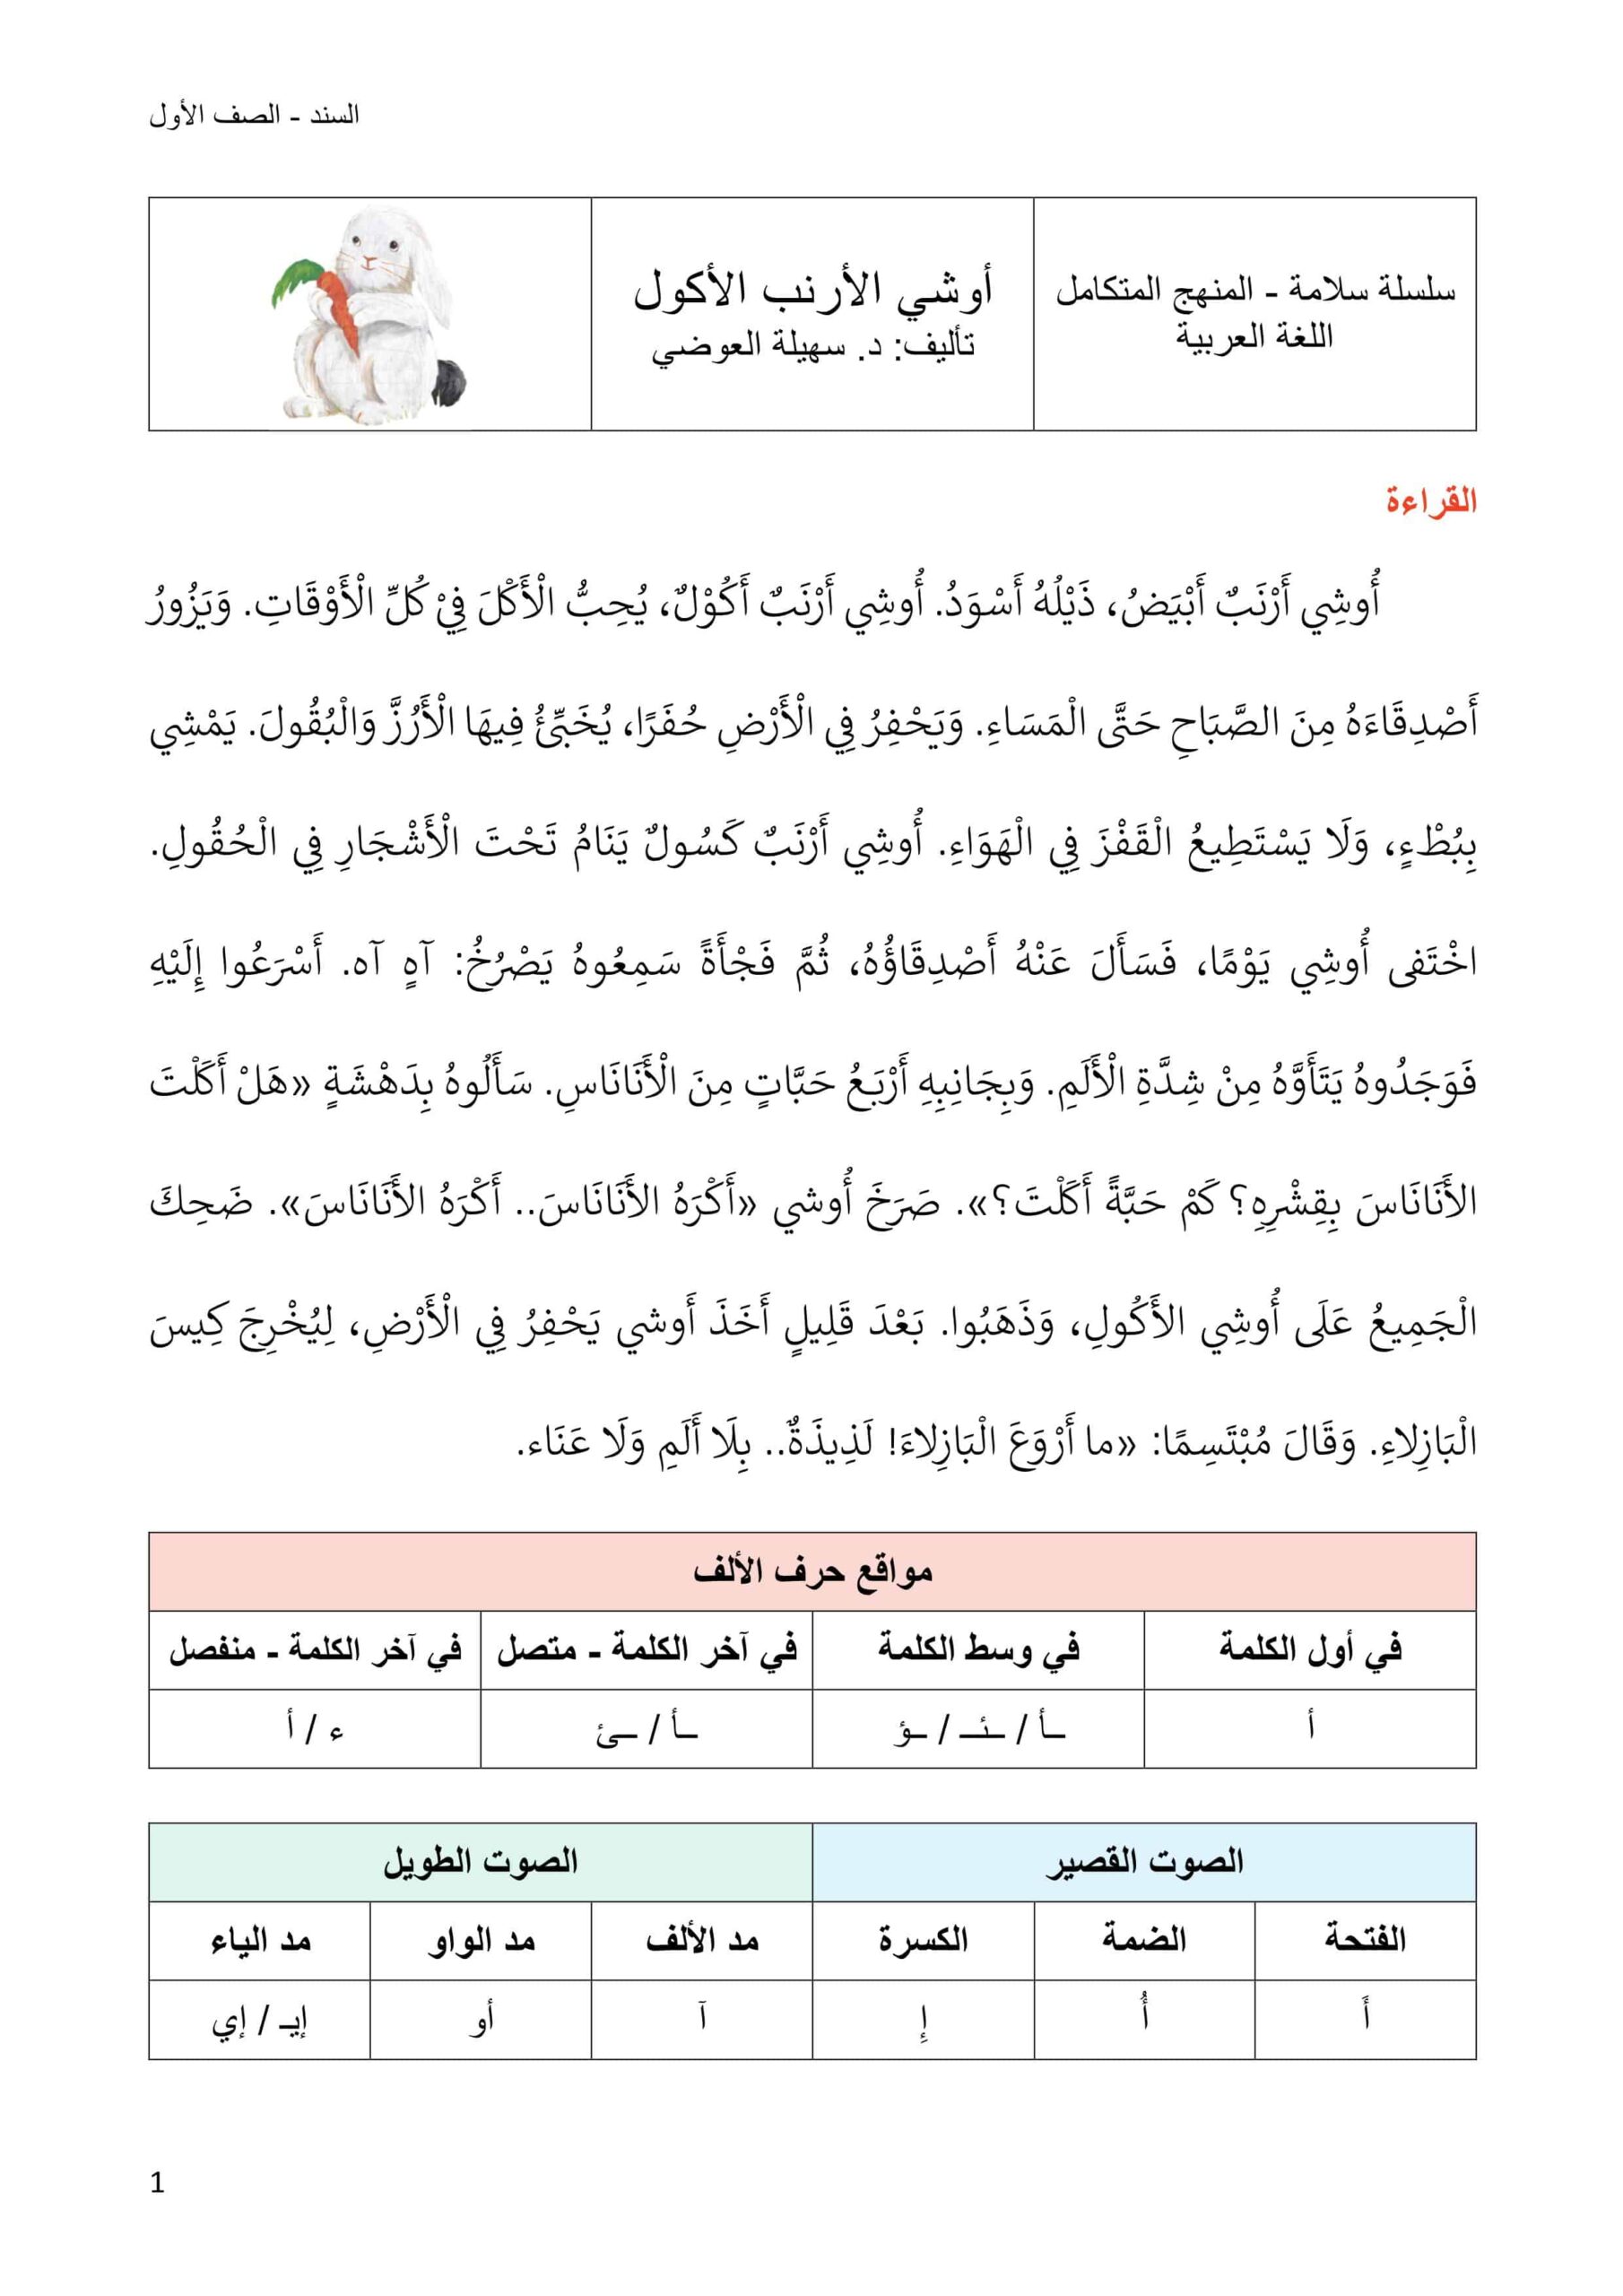 أوراق عمل أوشي الأرنب الأكول اللغة العربية الصف الأول